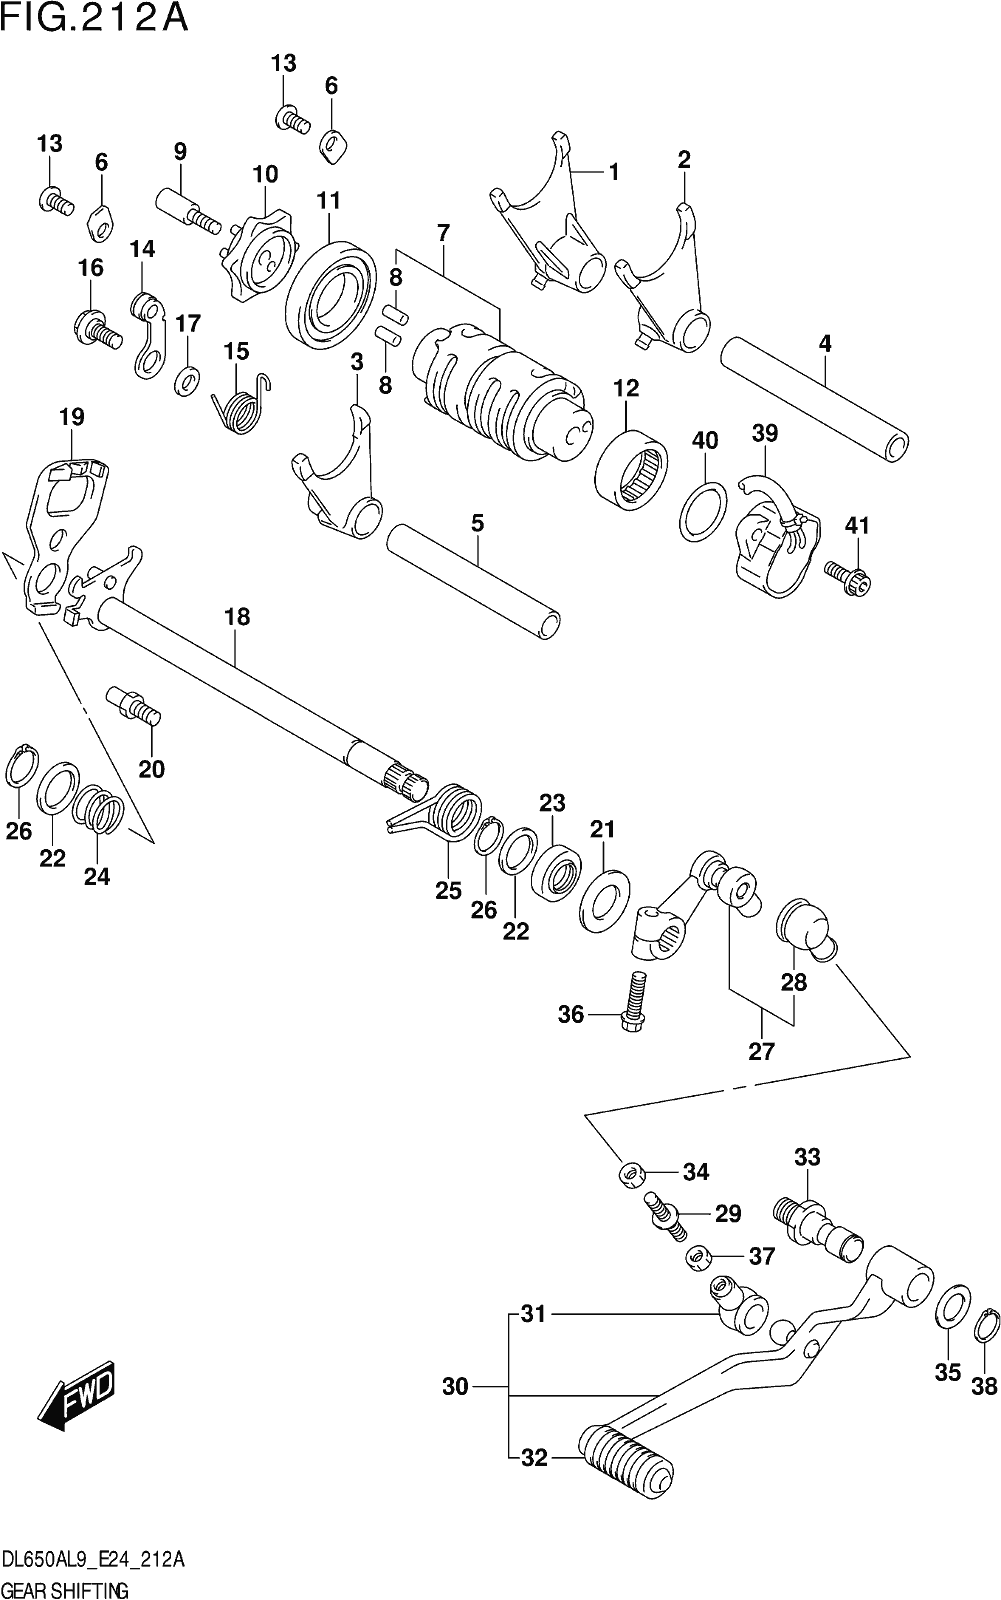 Fig.212a Gear Shifting